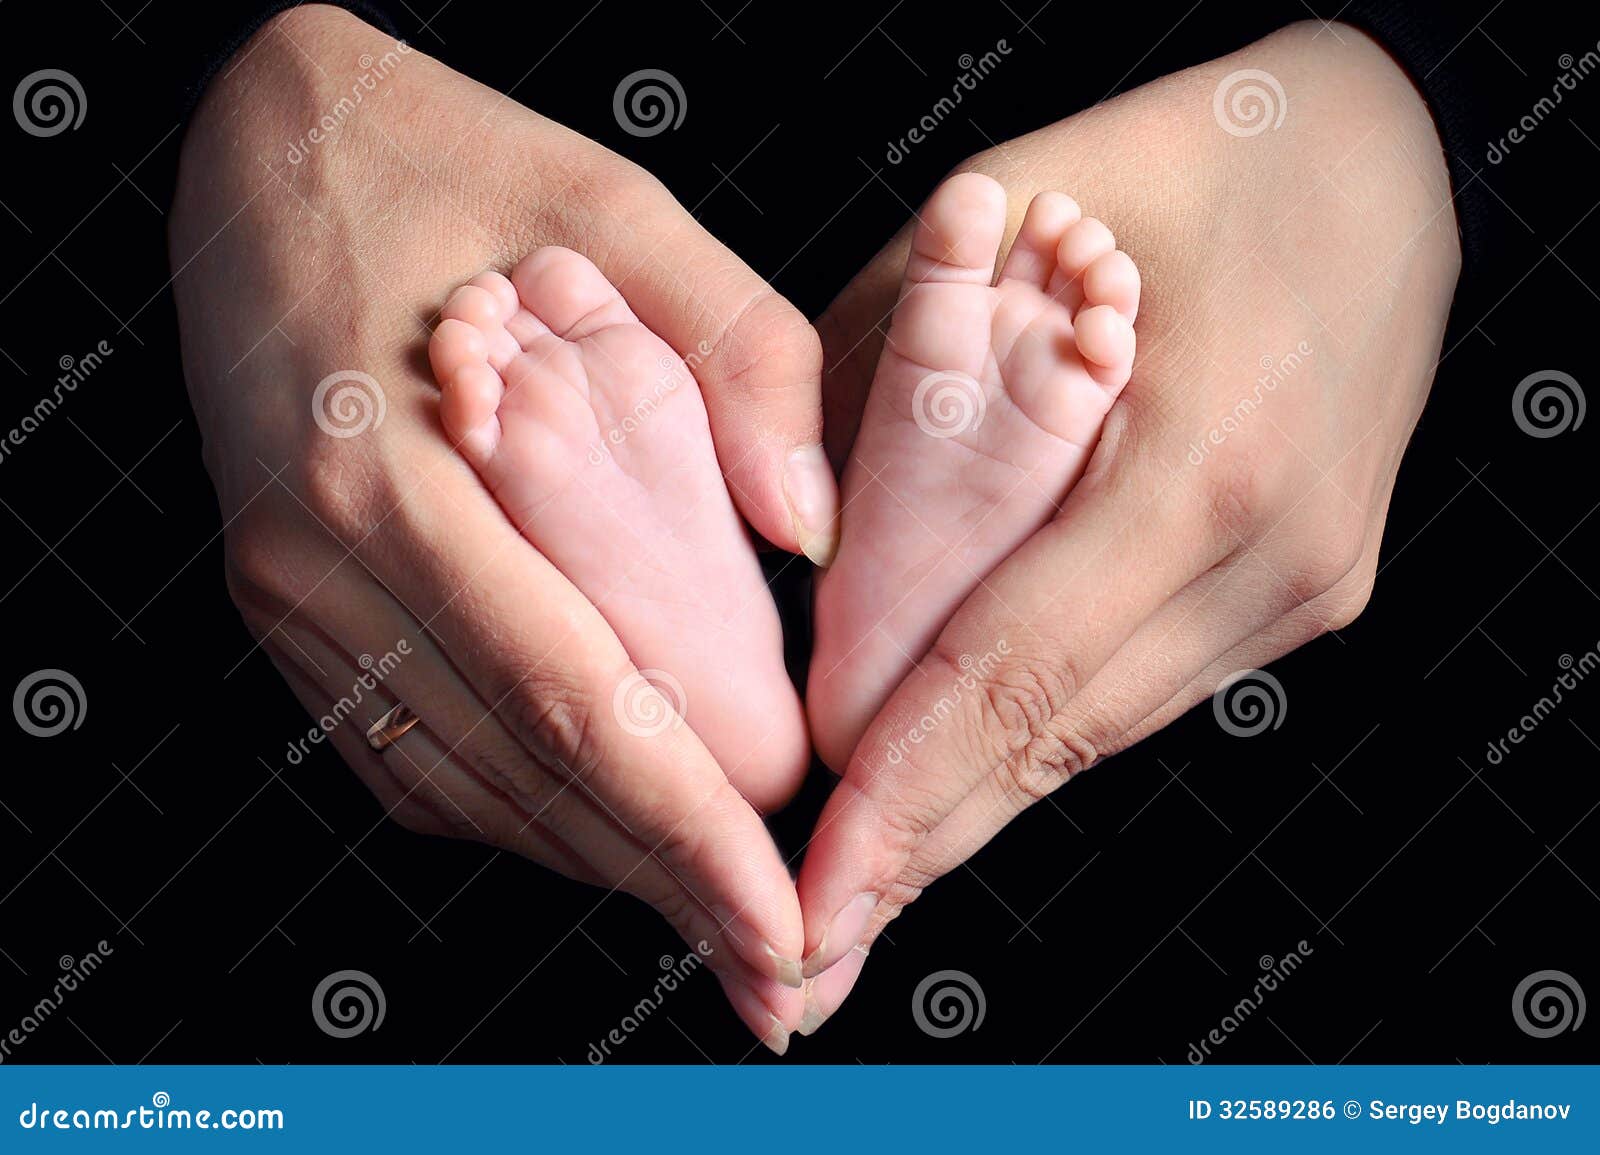 Ноги мамы для детей. Пяточки младенца в руках. Детская ножка в ладони мамы. Ножки младенца в руках матери. Ножка младенца в маминой руке.